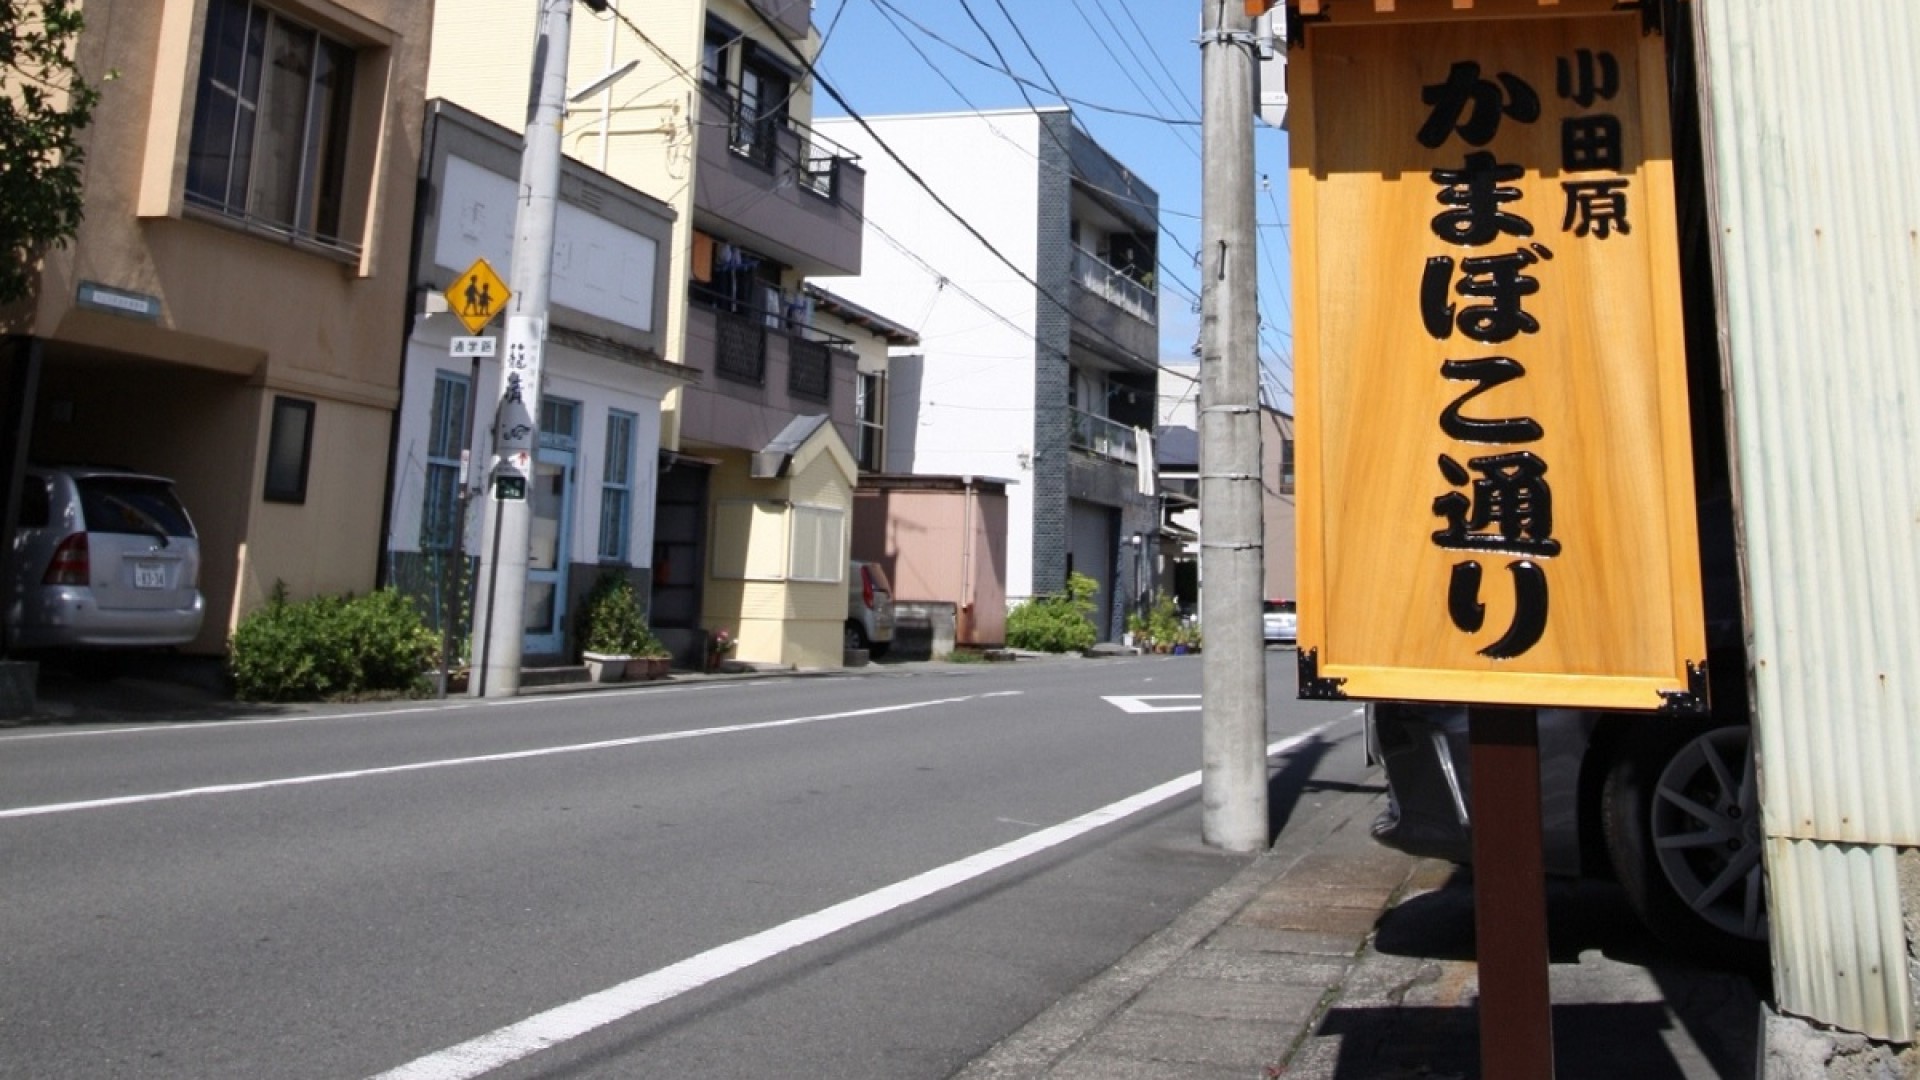 ถนนคะมะโบะโคะ ในโอดะวะระ 